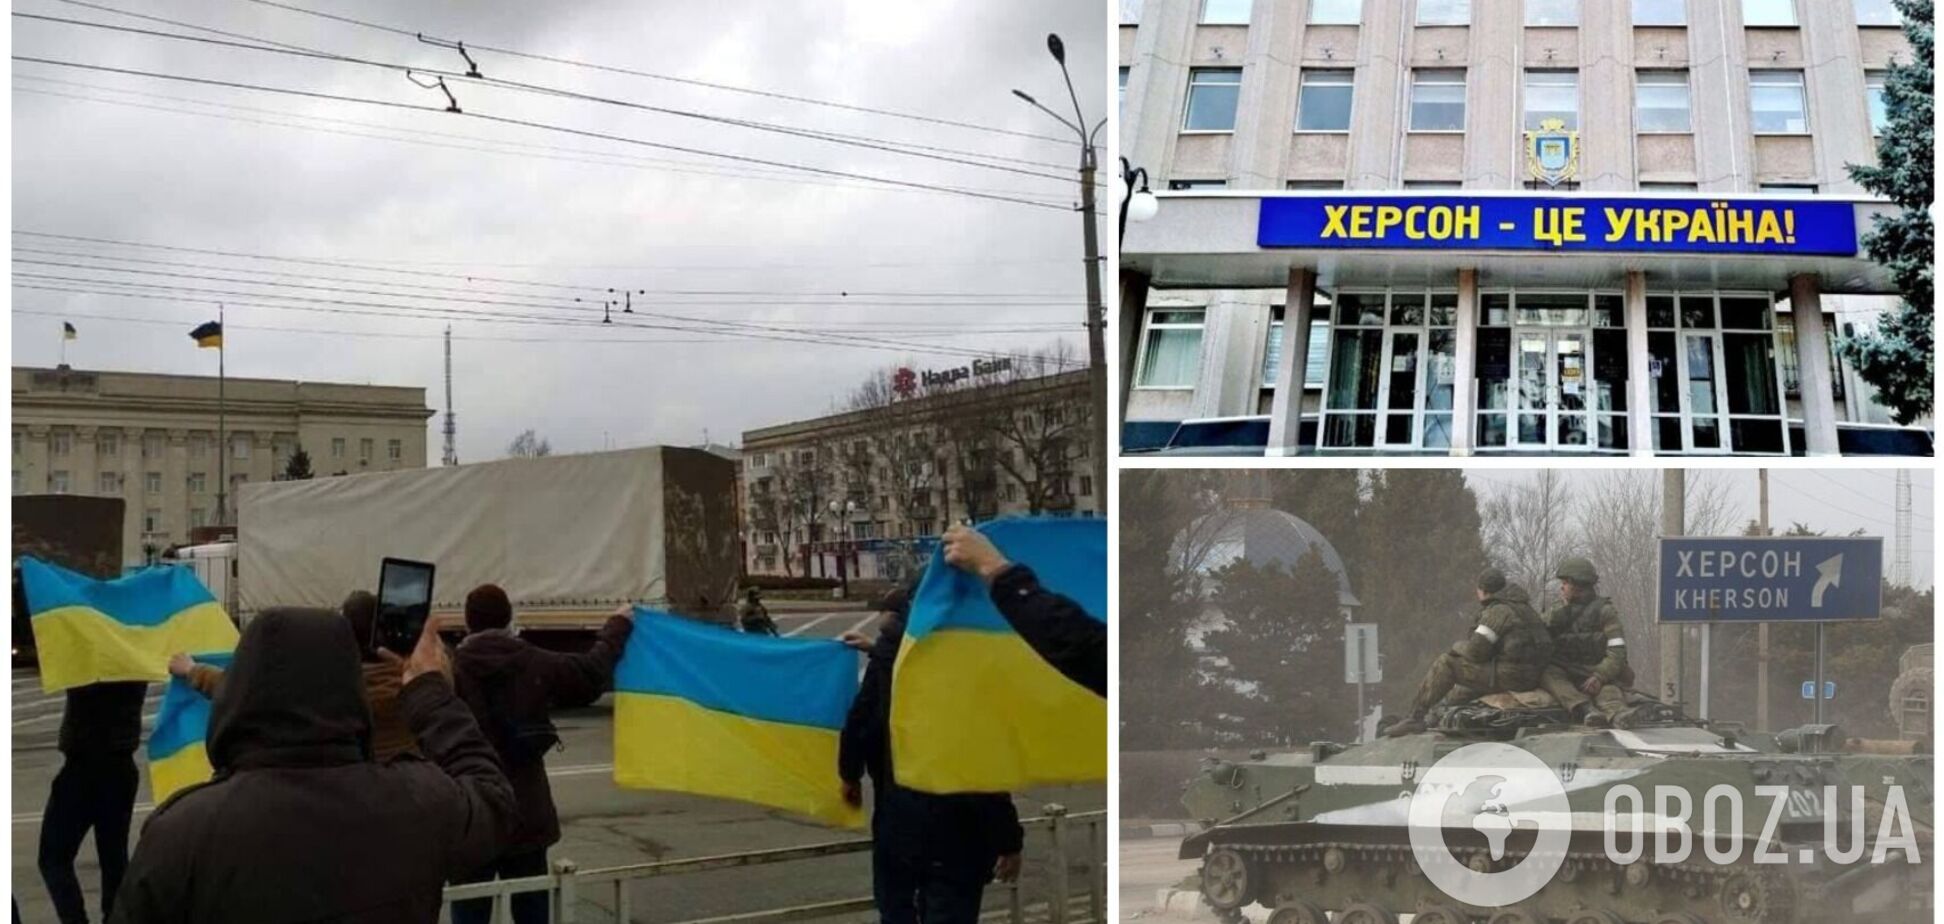 У Херсоні окупанти влаштували 'постановку' з видачею гуманітарки, але люди вийшли до них із прапорами України. Фото і відео